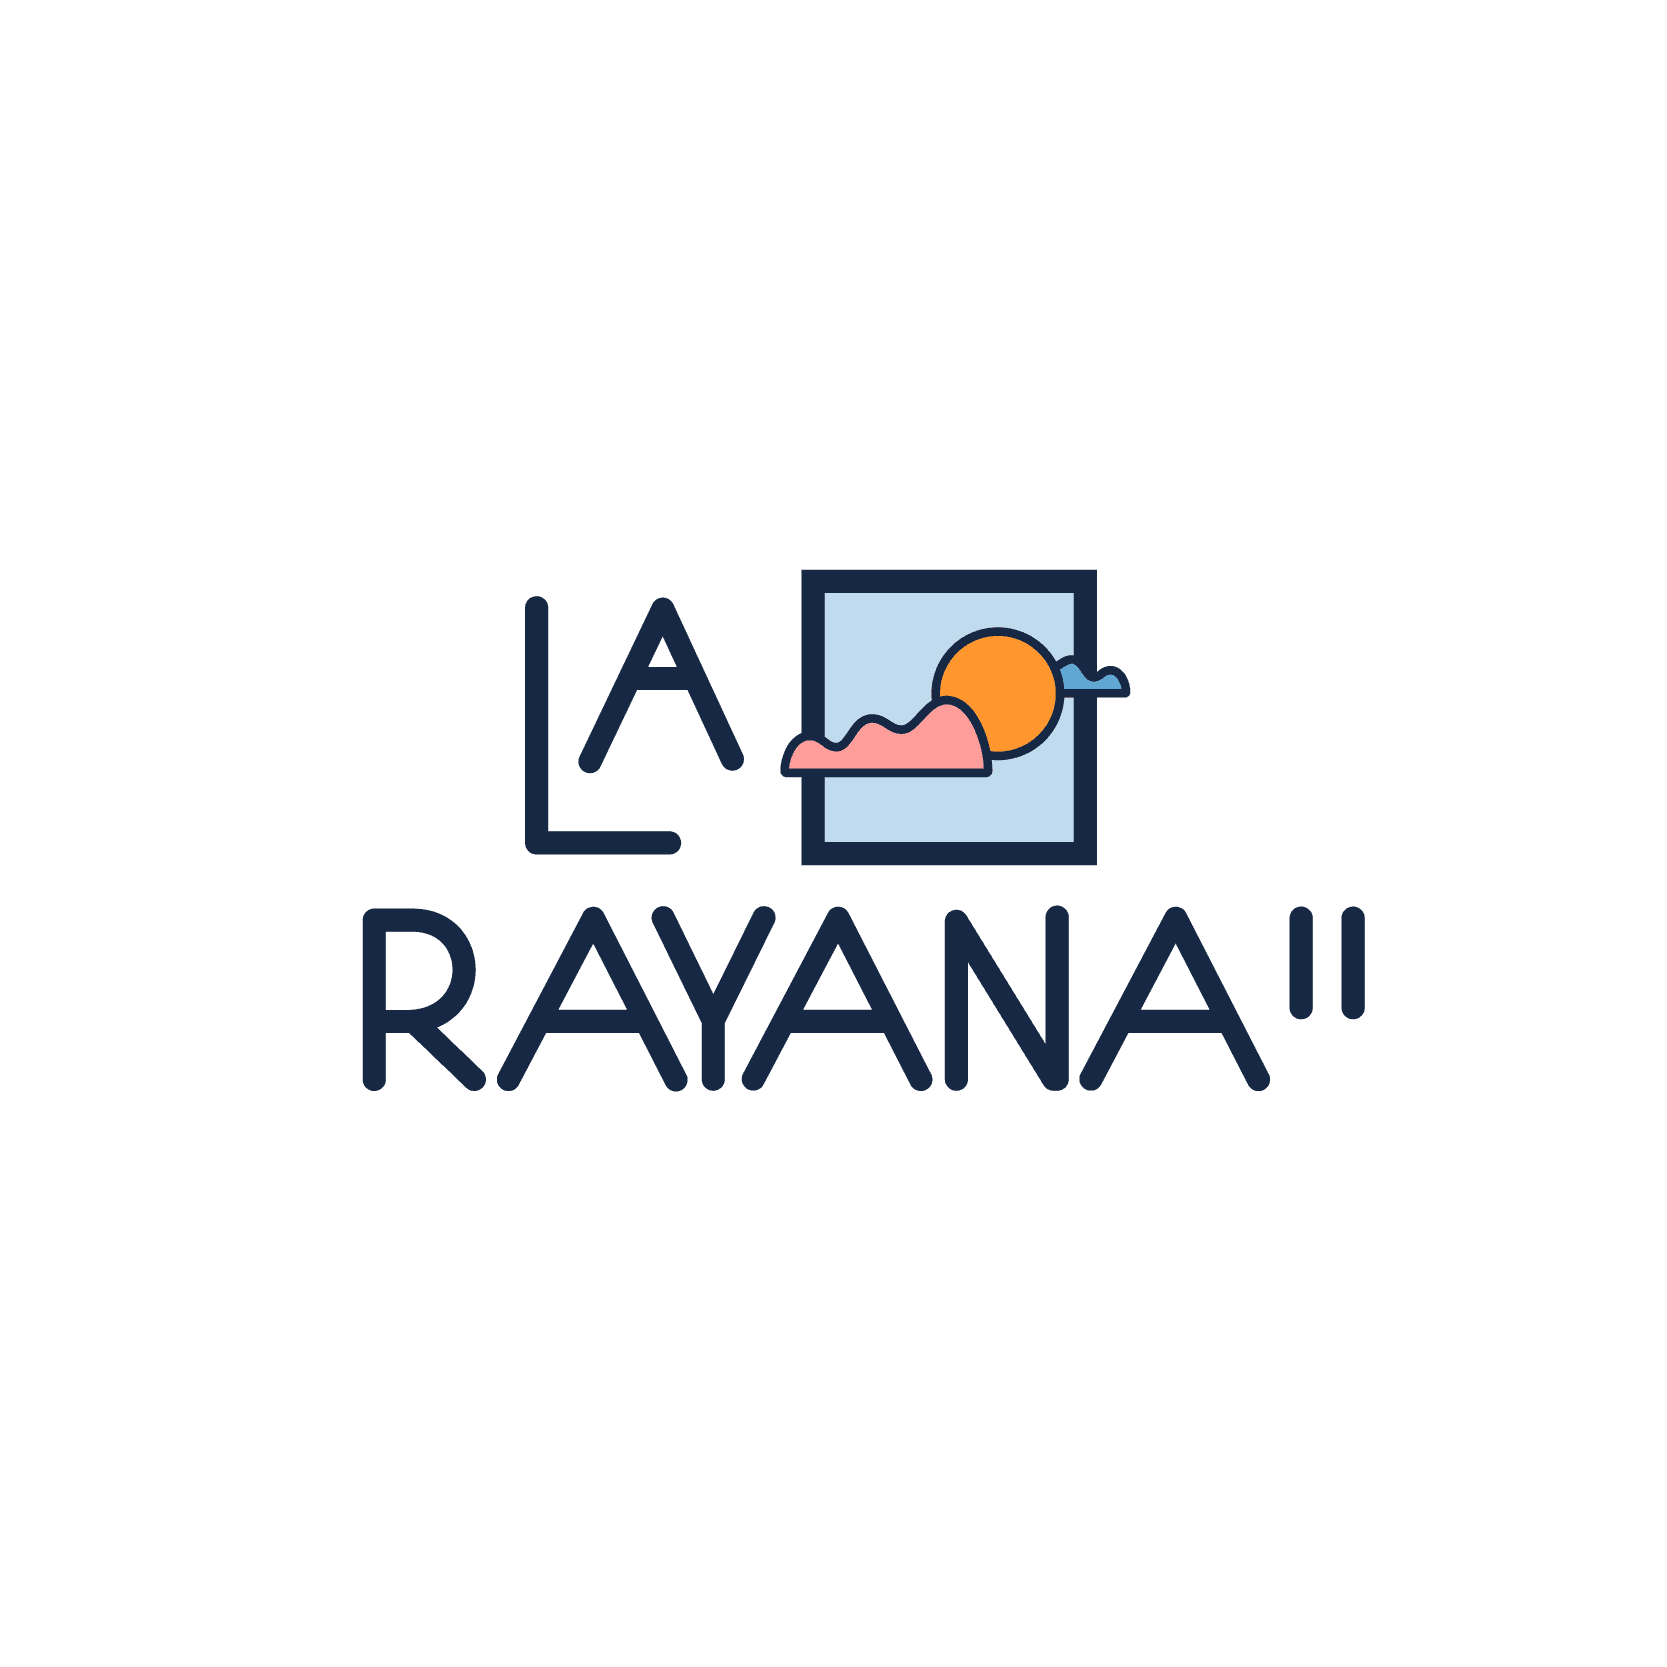 PUE-LA-RAYANA-II-LOGO_Mesa-de-trabajo-1-002.png